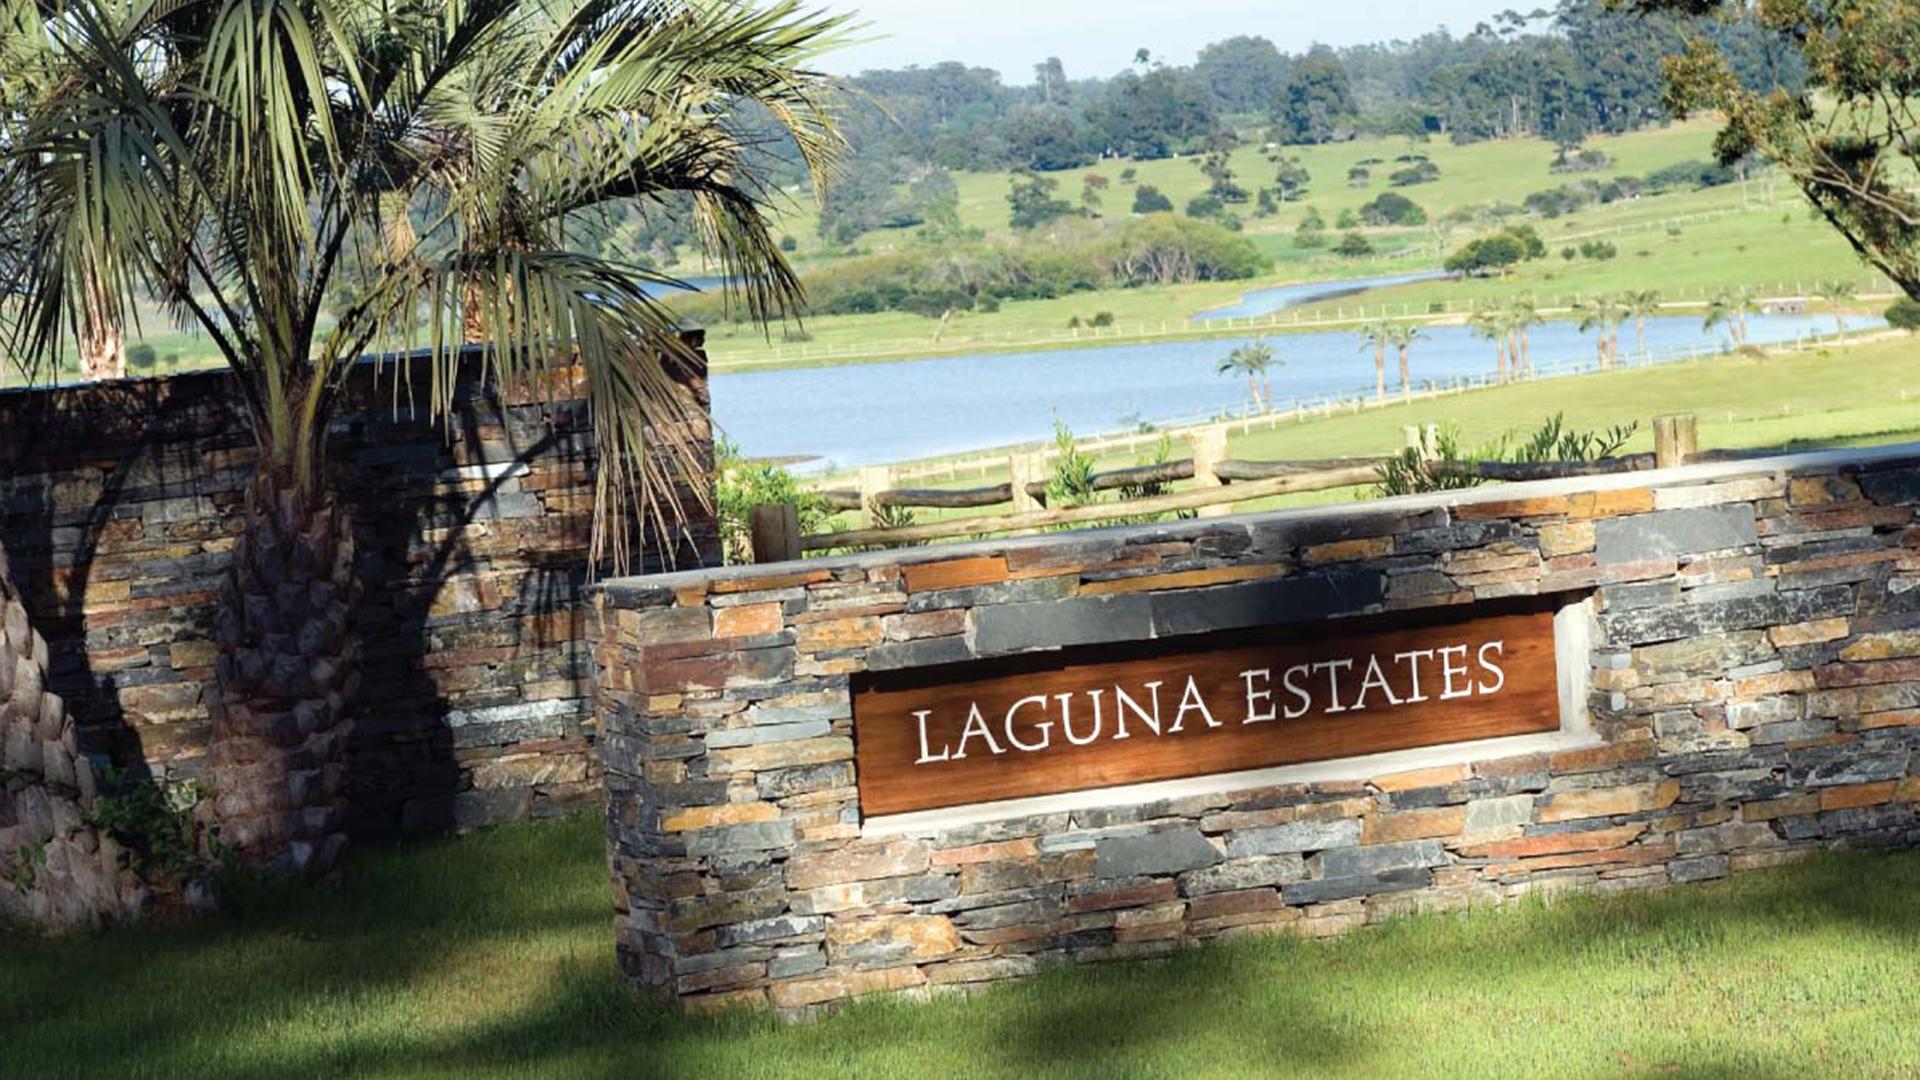 Laguna Estates - Plots For Sale located in Manantiales, Punta del Este, Uruguay, listed by Curiocity Villas.